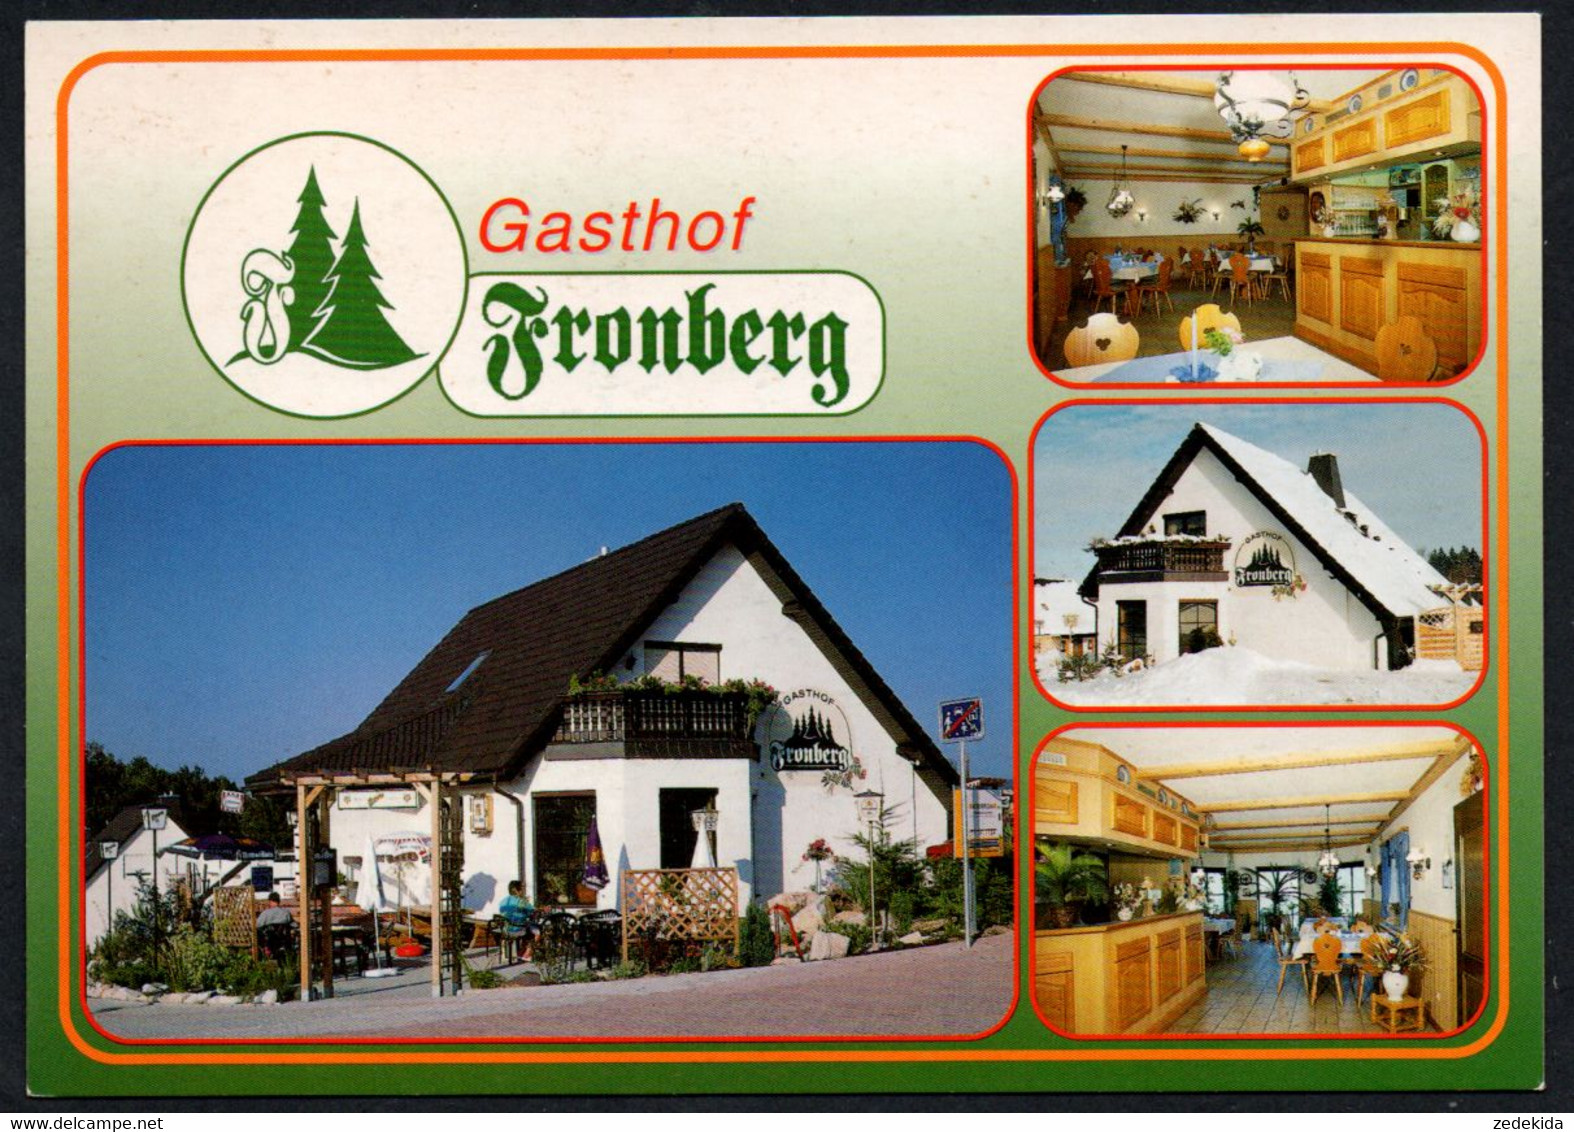 E9403 - TOP Reumtengrün Gasthof Gaststätte Fronberg - Bild Und Heimat Reichenbach Qualitätskarte - Vogtland